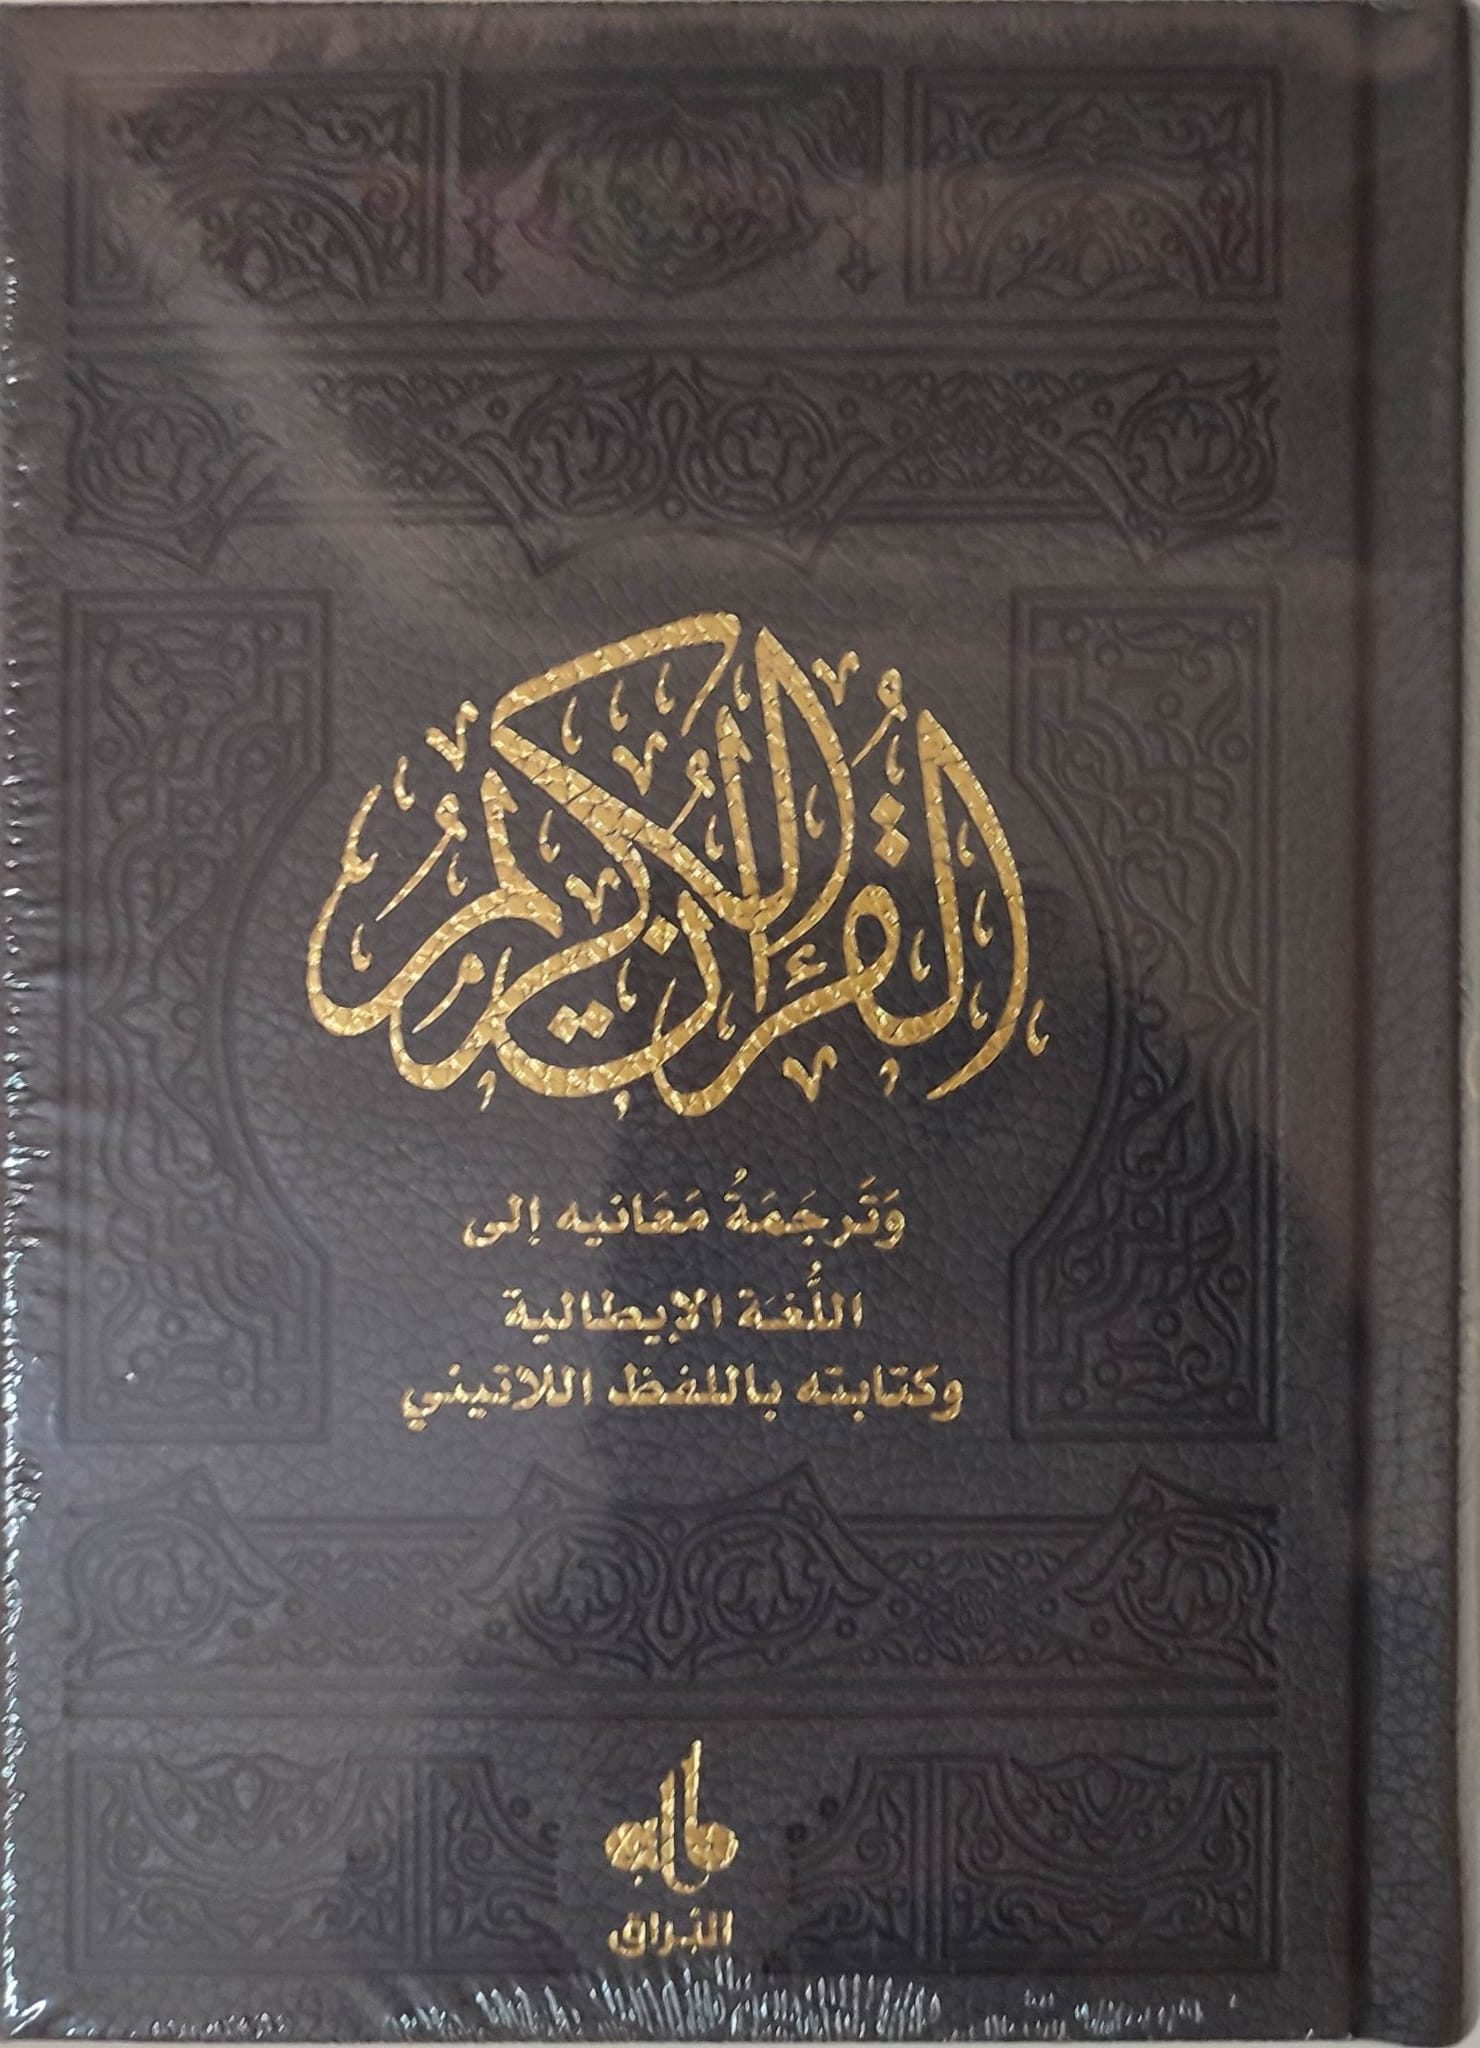 Il Nobile Corano in italiano testo arabo, traduzione e traslitterazione,  nero